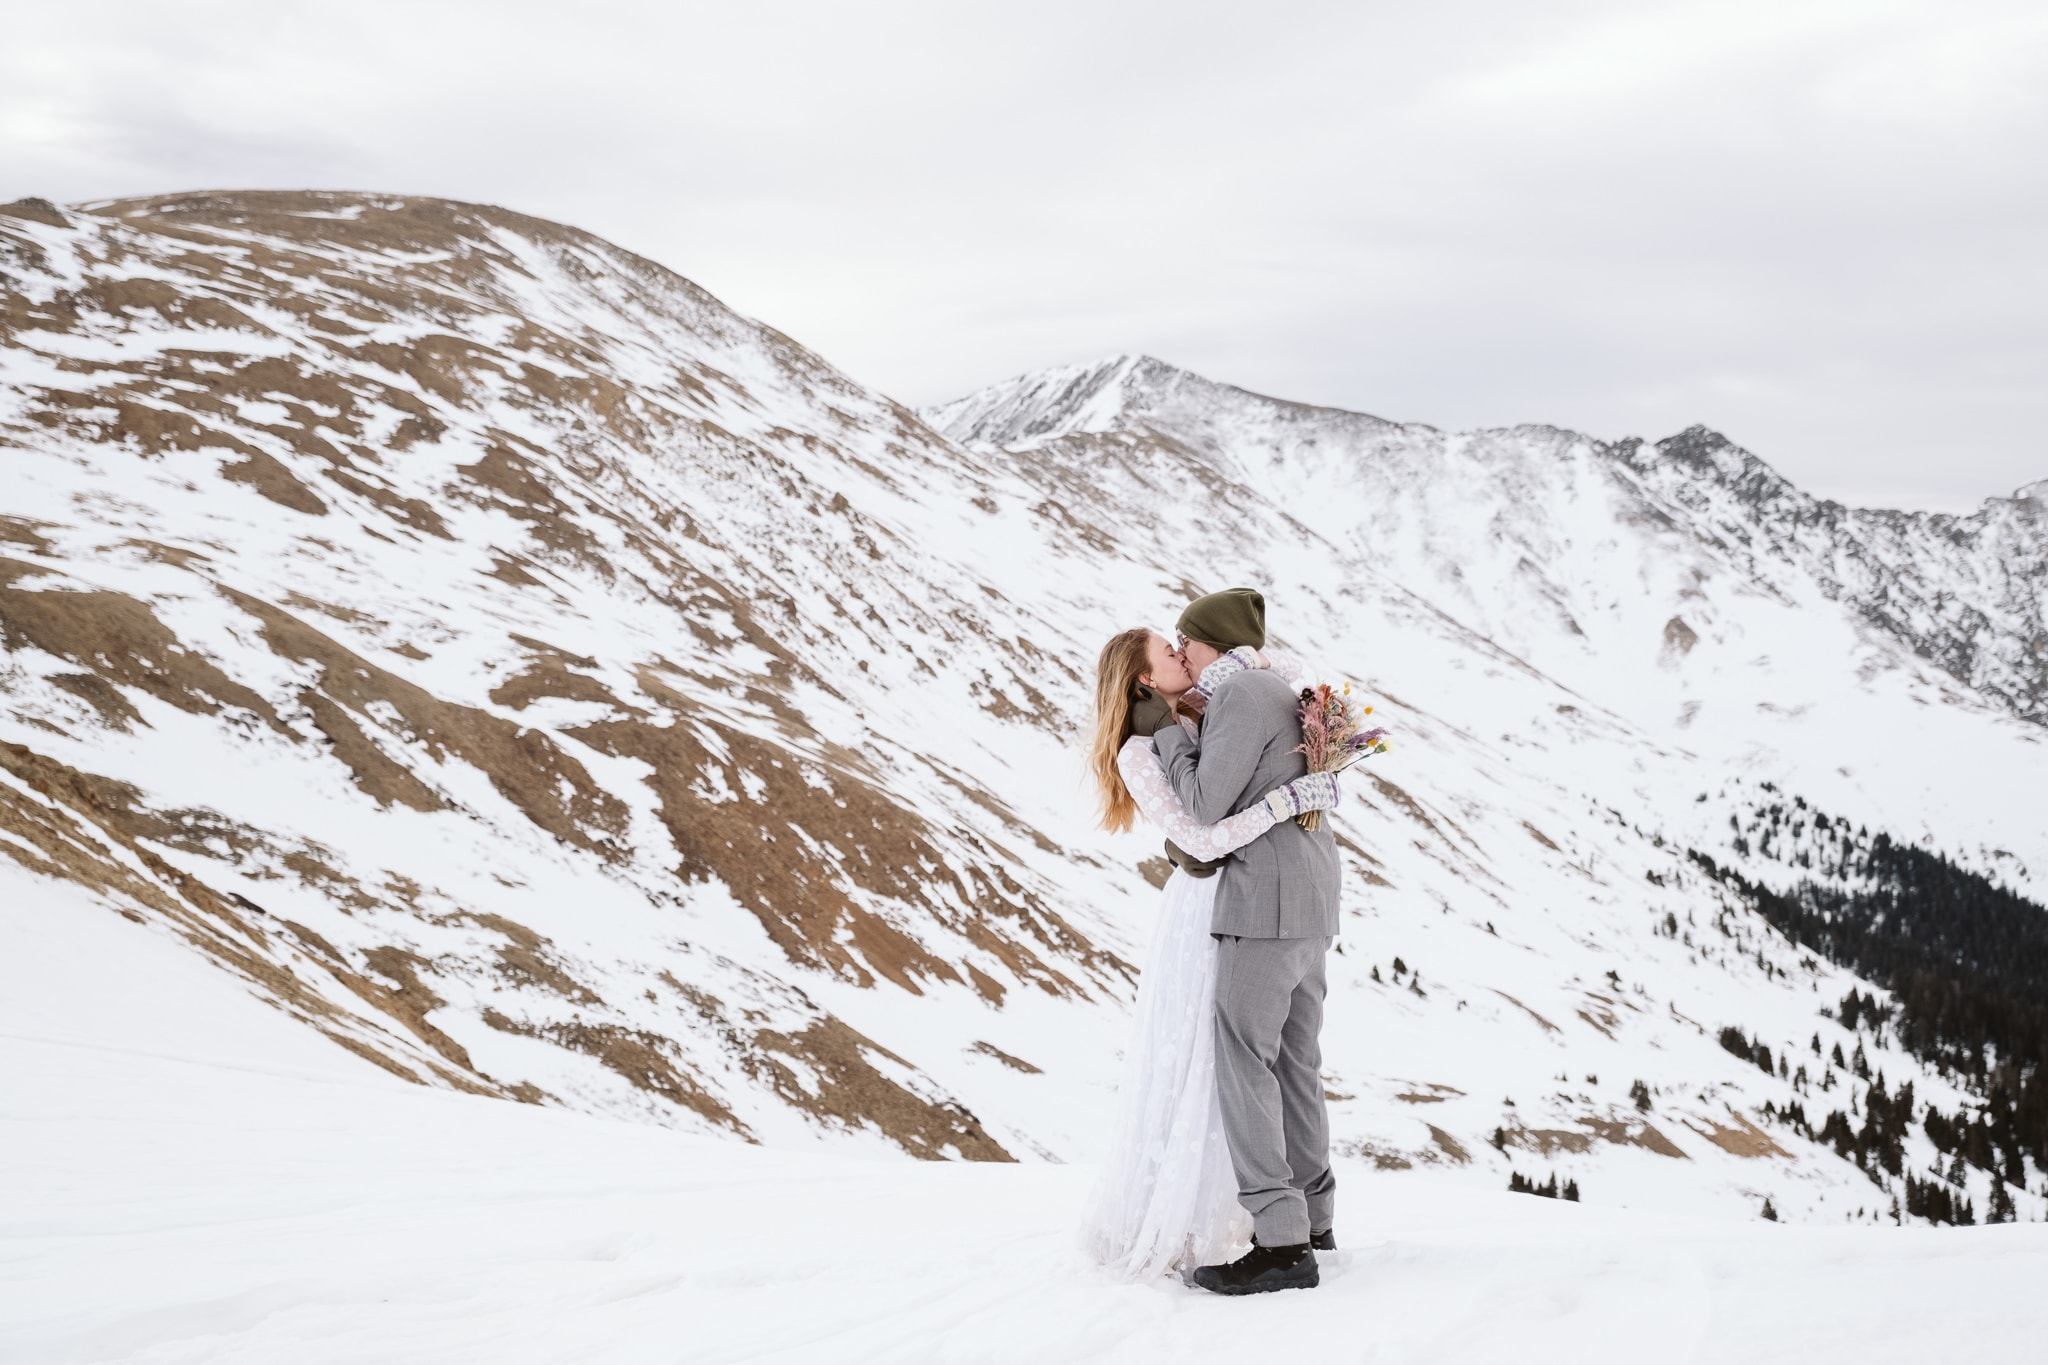 Winter elopement in Colorado